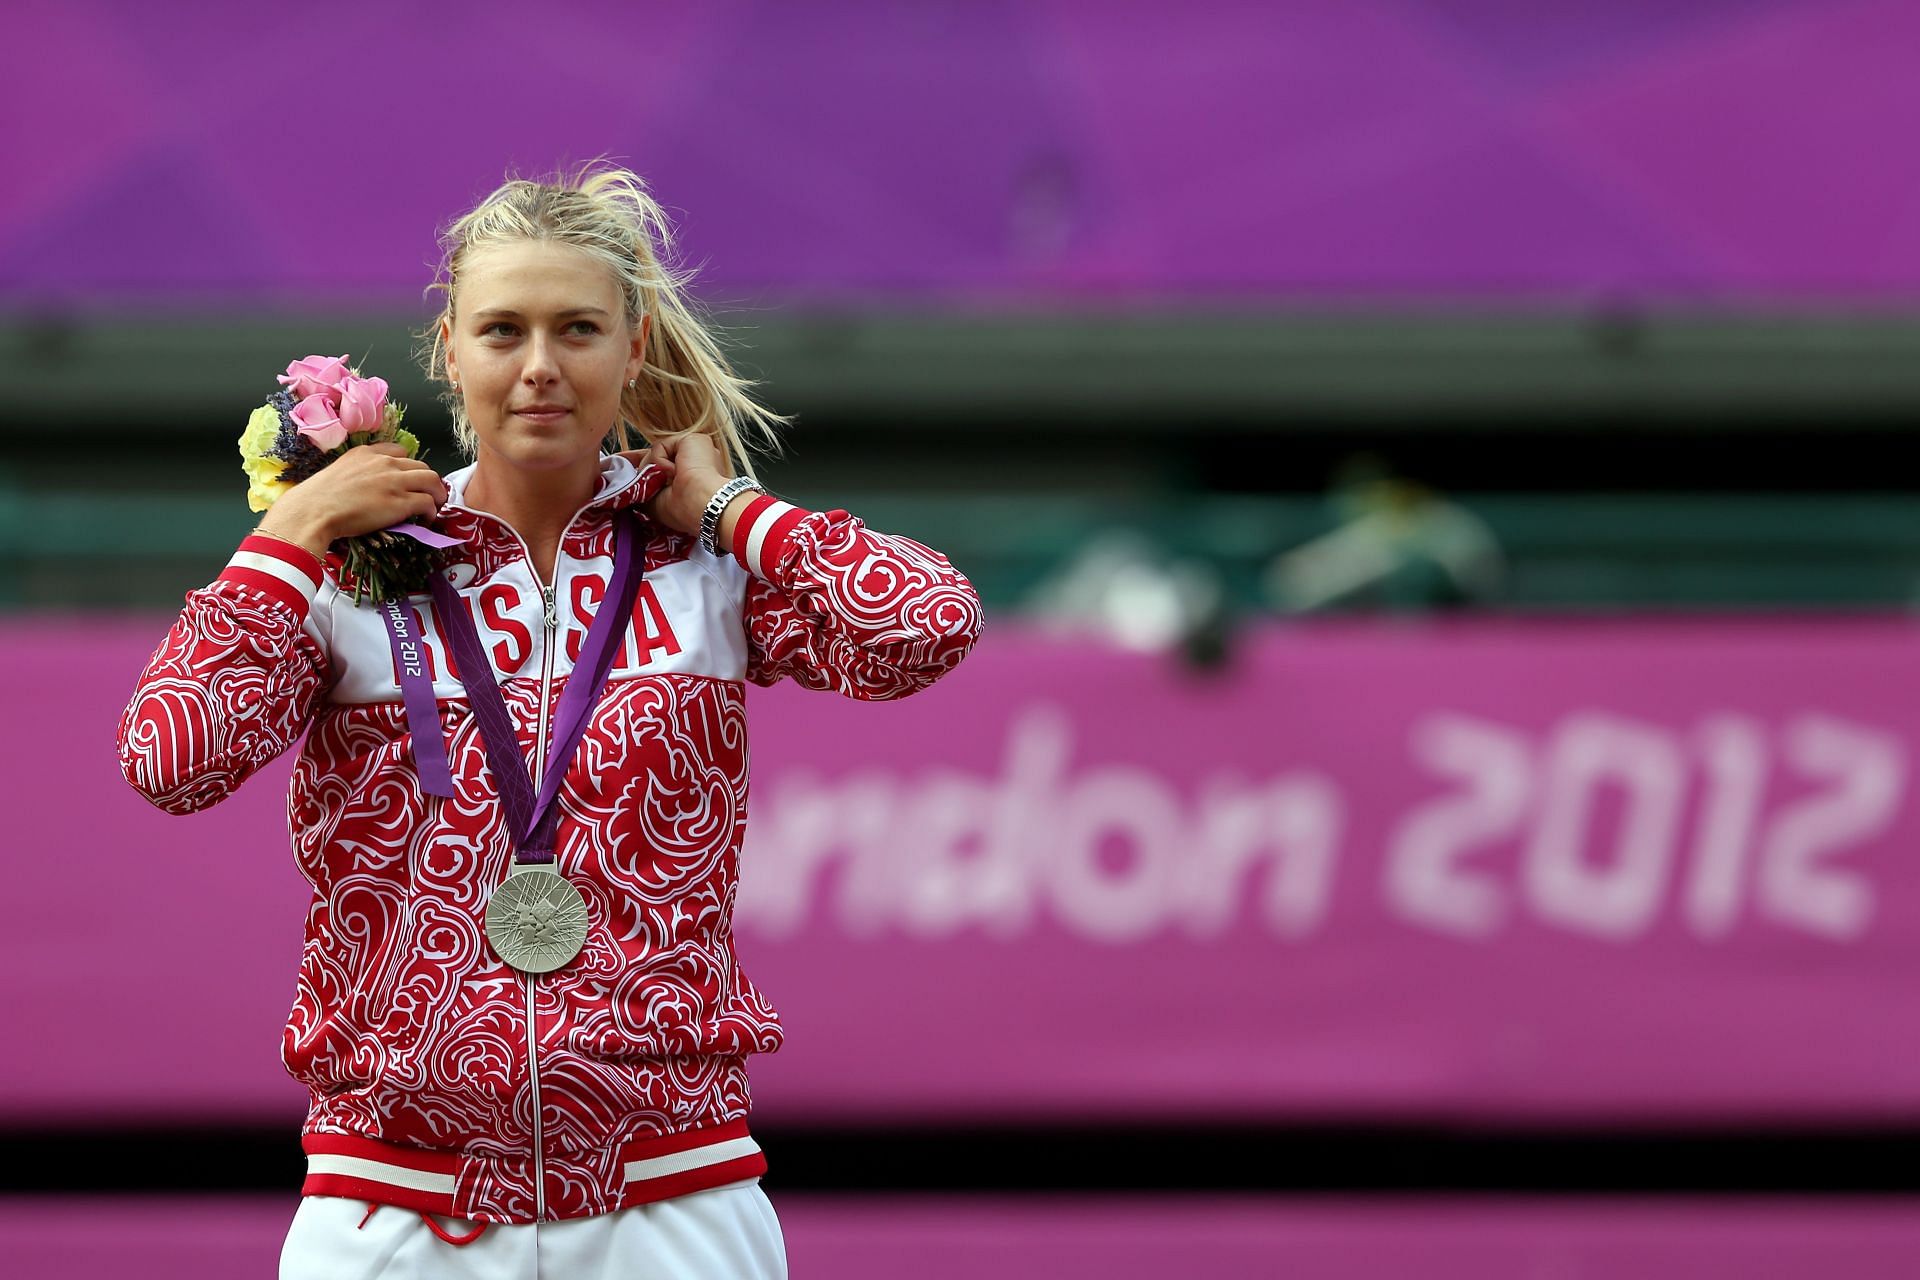 Maria Sharapova won the silver medal at the 2012 Olympics